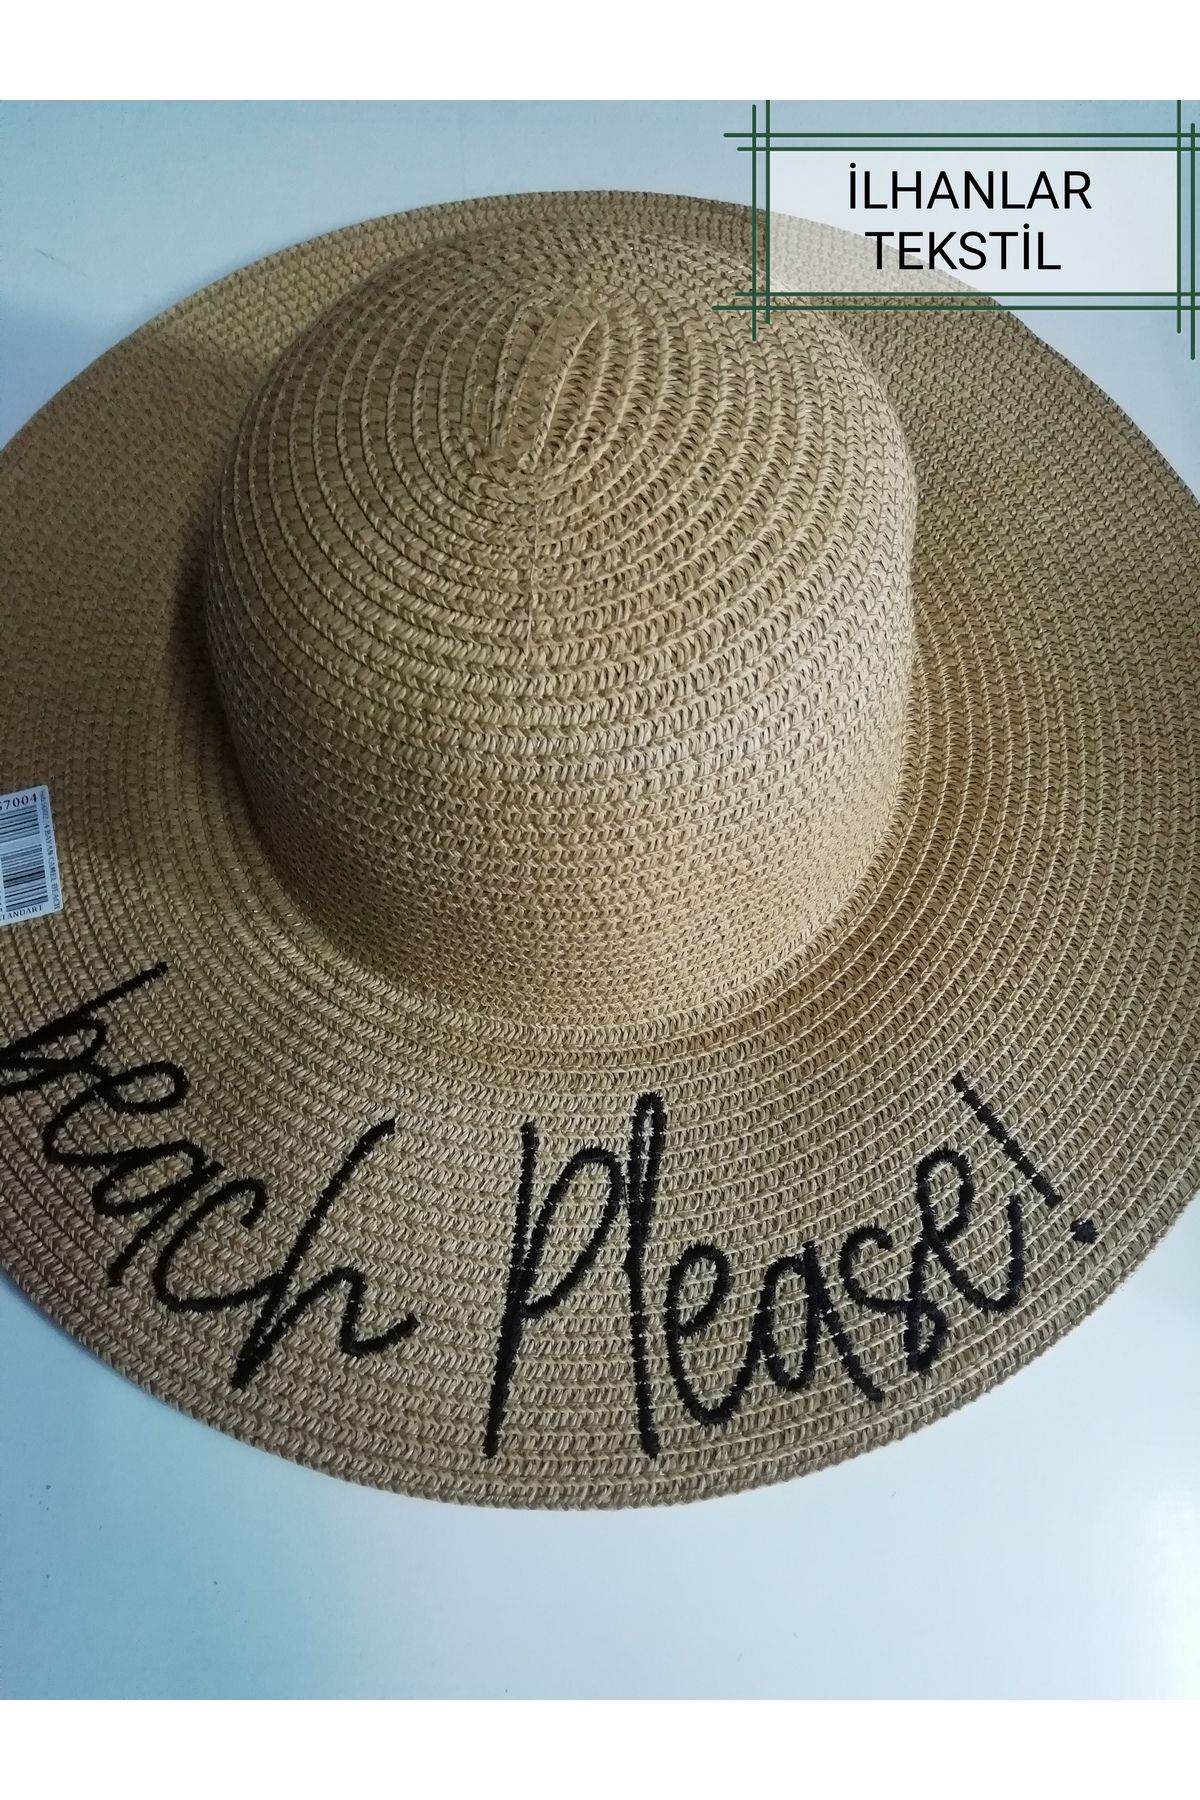 İLHANLAR camel beach please hasır fötr şapka